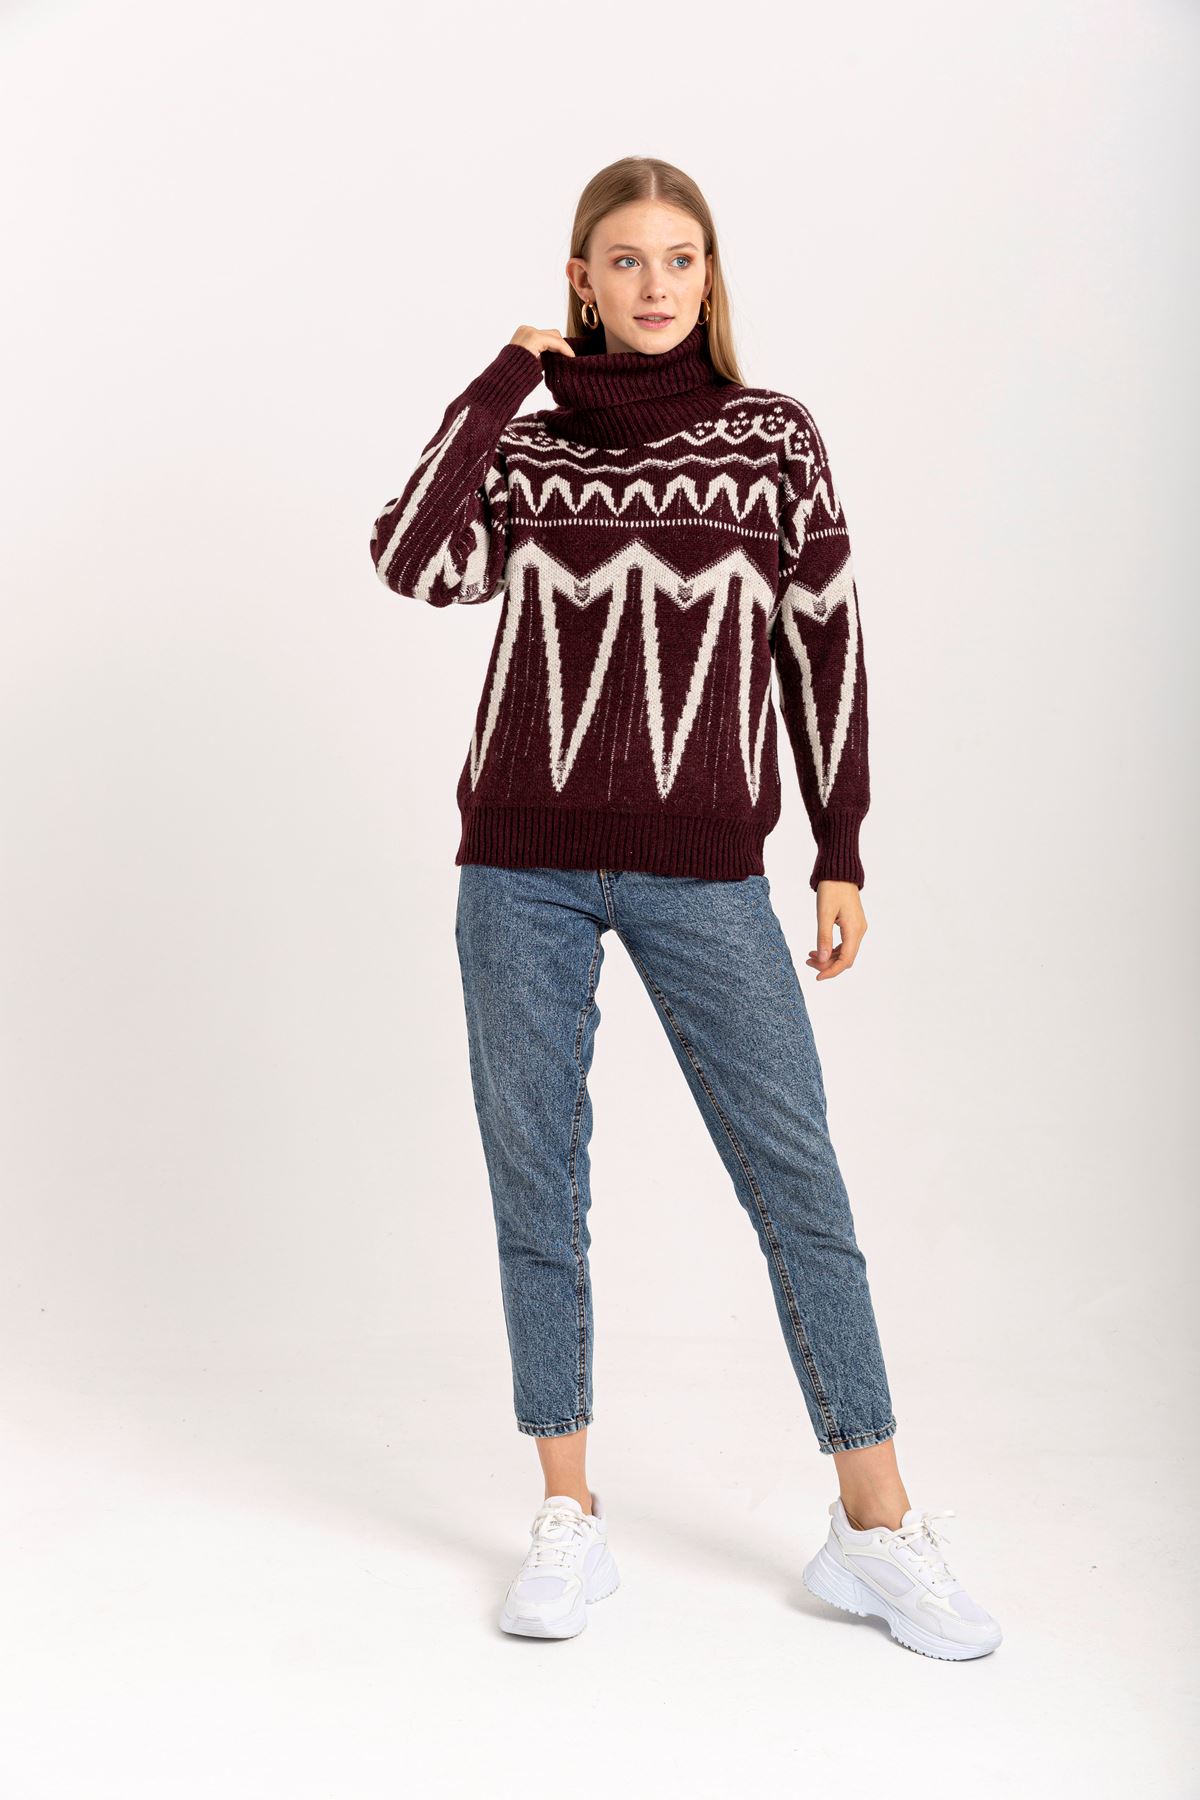 Knitwear Fabric Long Sleeve Turtle Neck Striped Women Sweater - Burgundy